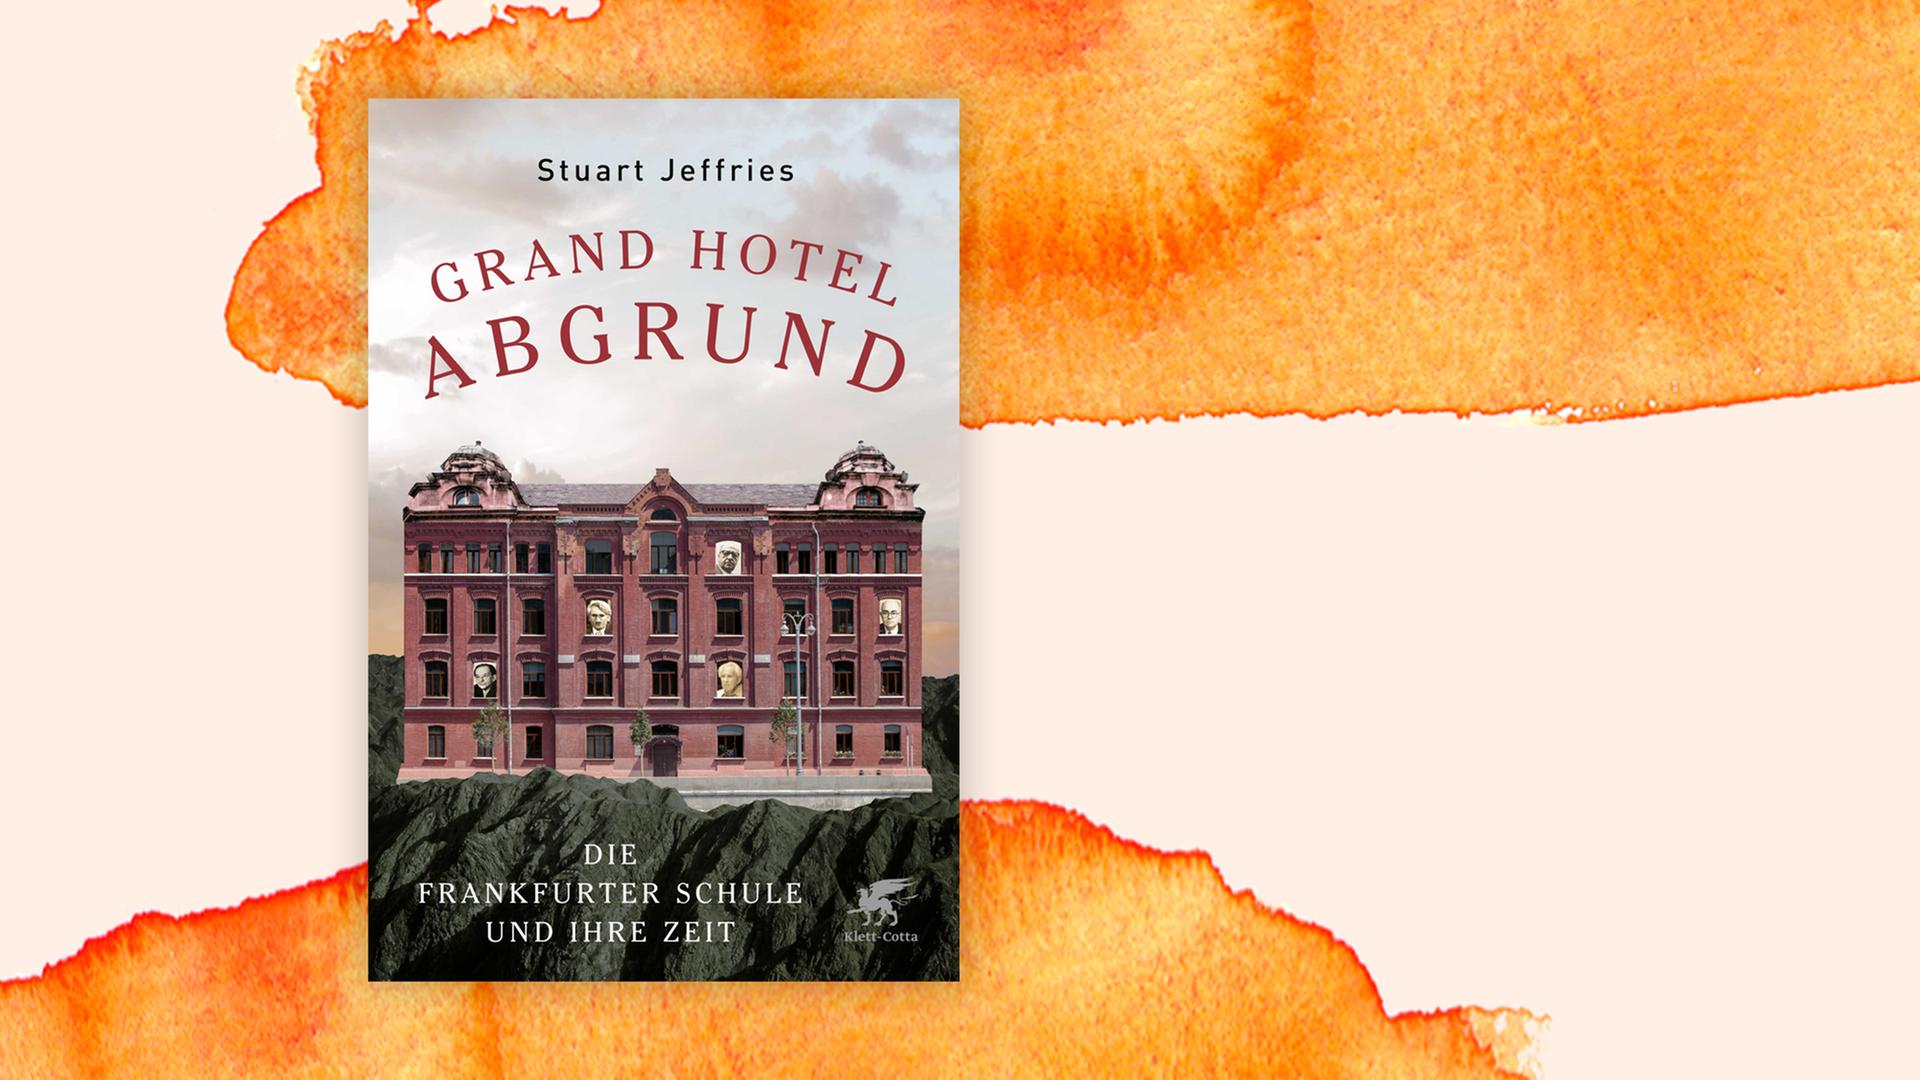 Das Bild zeigt das Cover des Buches "Grand Hotel Abgrund" vor einem aquarellierten Hintergrund.